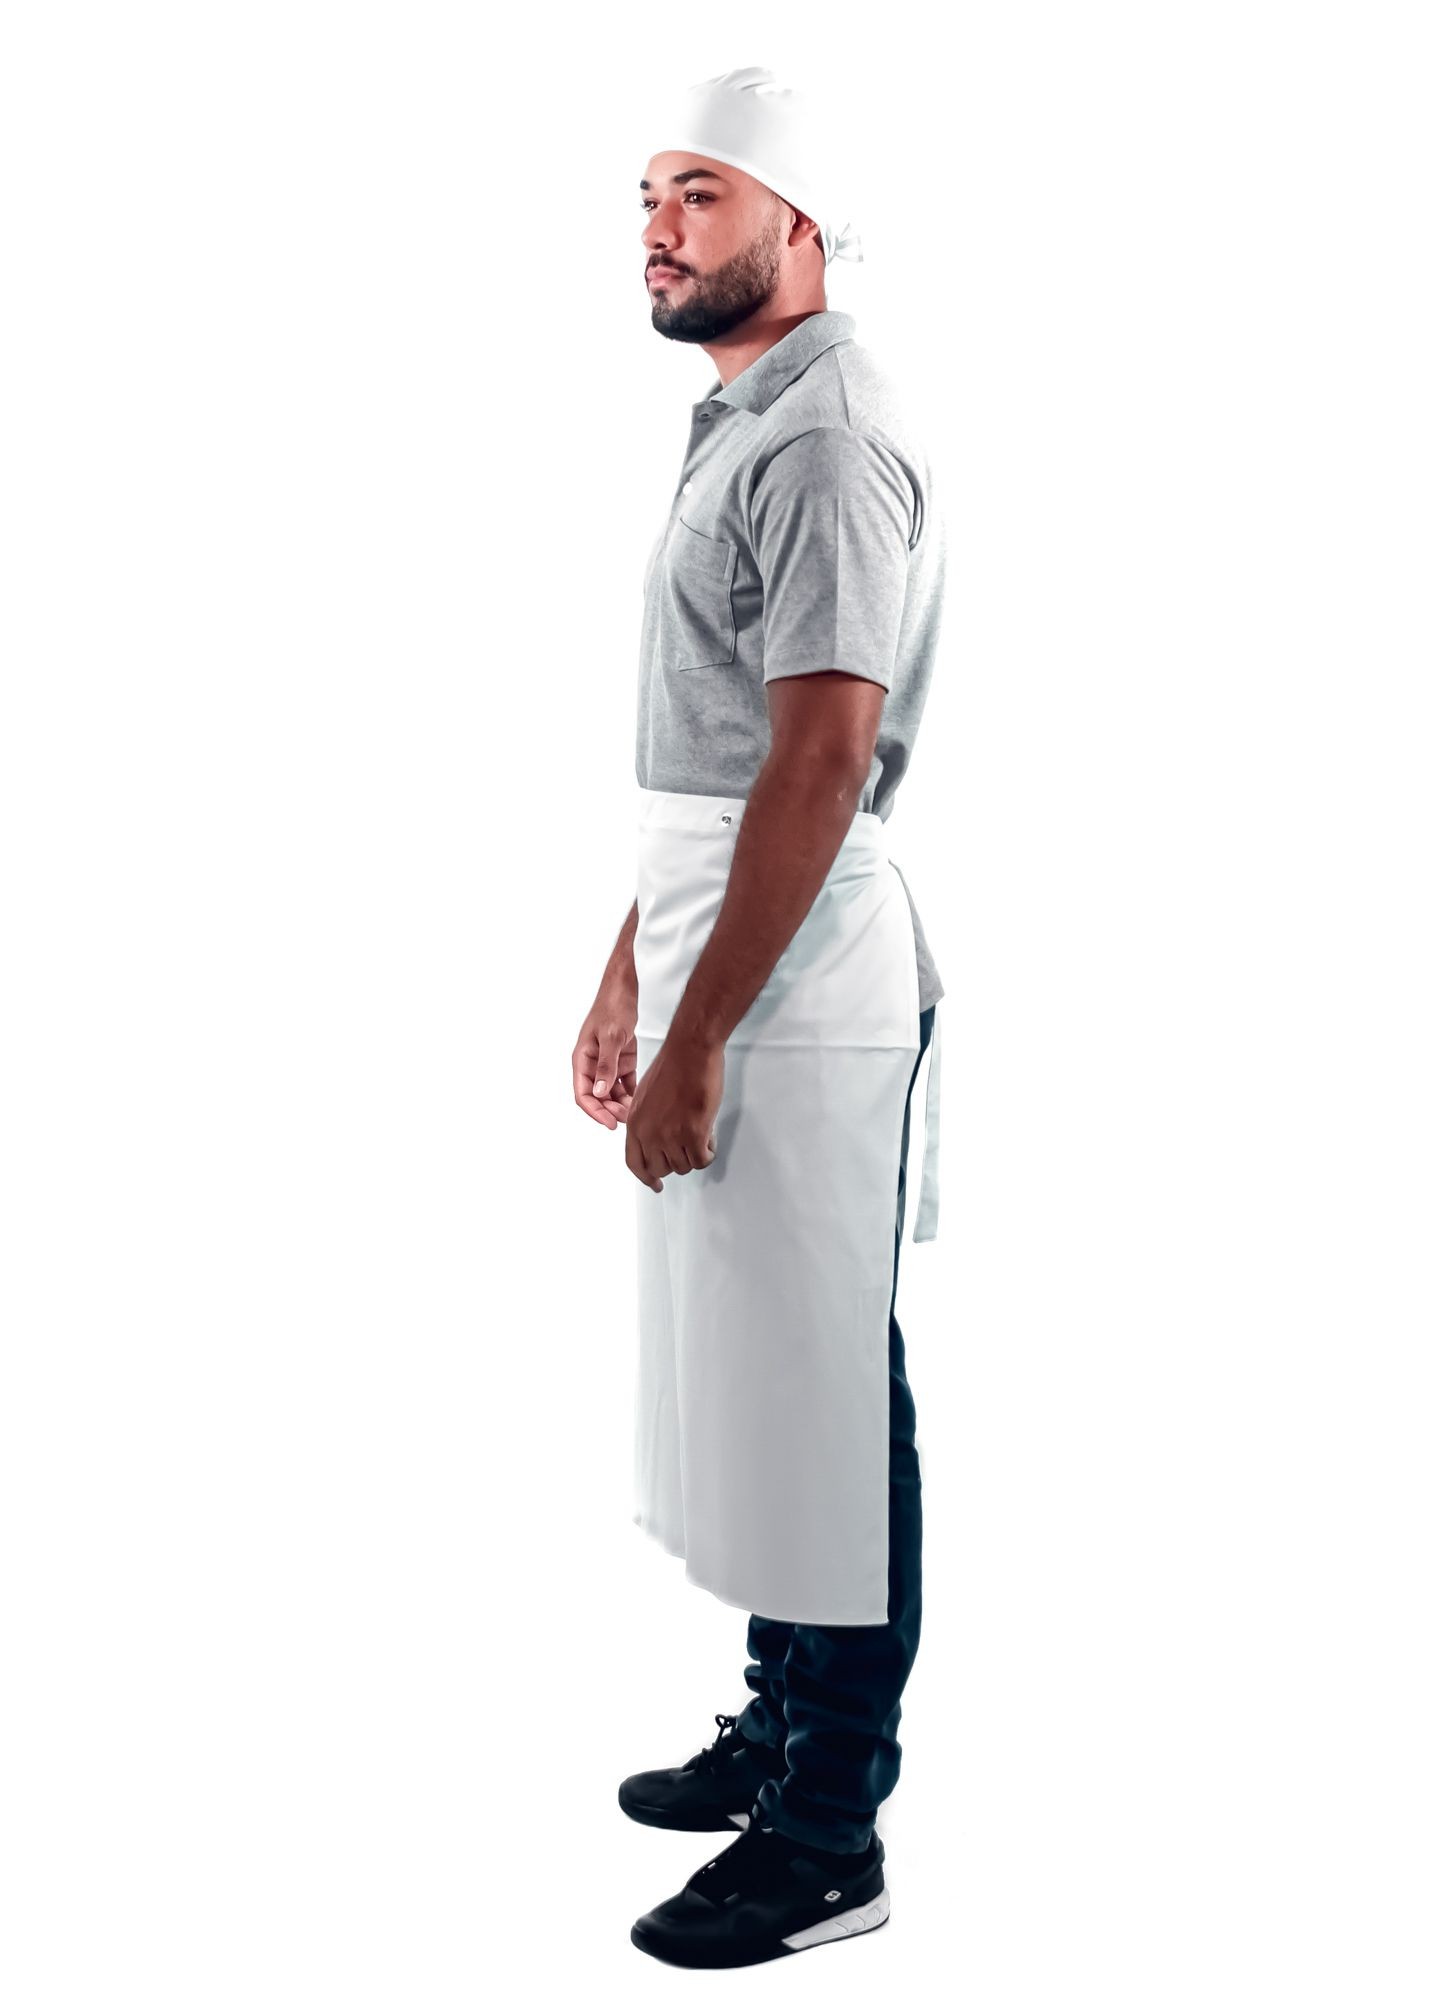 Antigo_Avental de Frente Masculino Sumaia Enrico, 2 em 1 com peito removível Para Profissionais da Cozinha - Branco